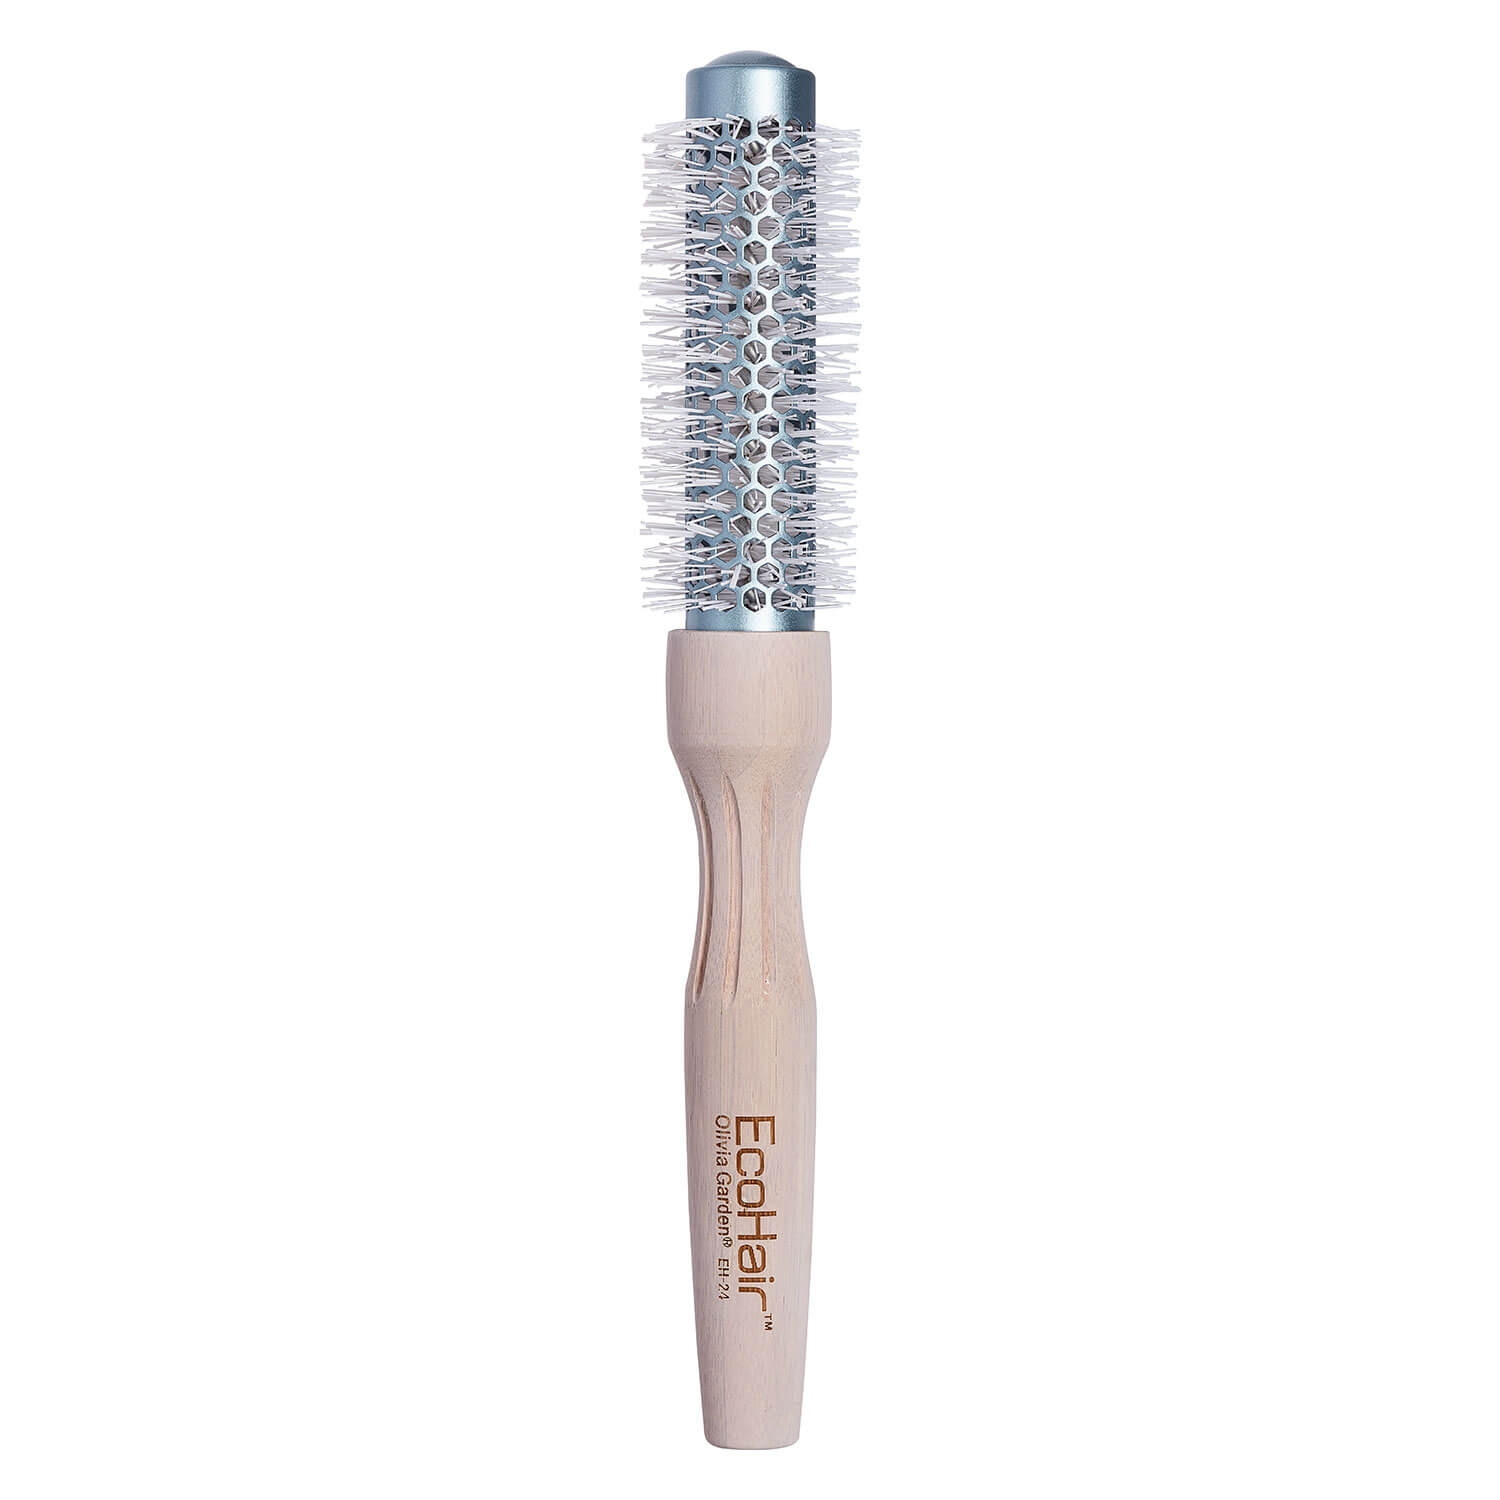 Produktbild von Eco Hair - Thermal Round Brush 24mm